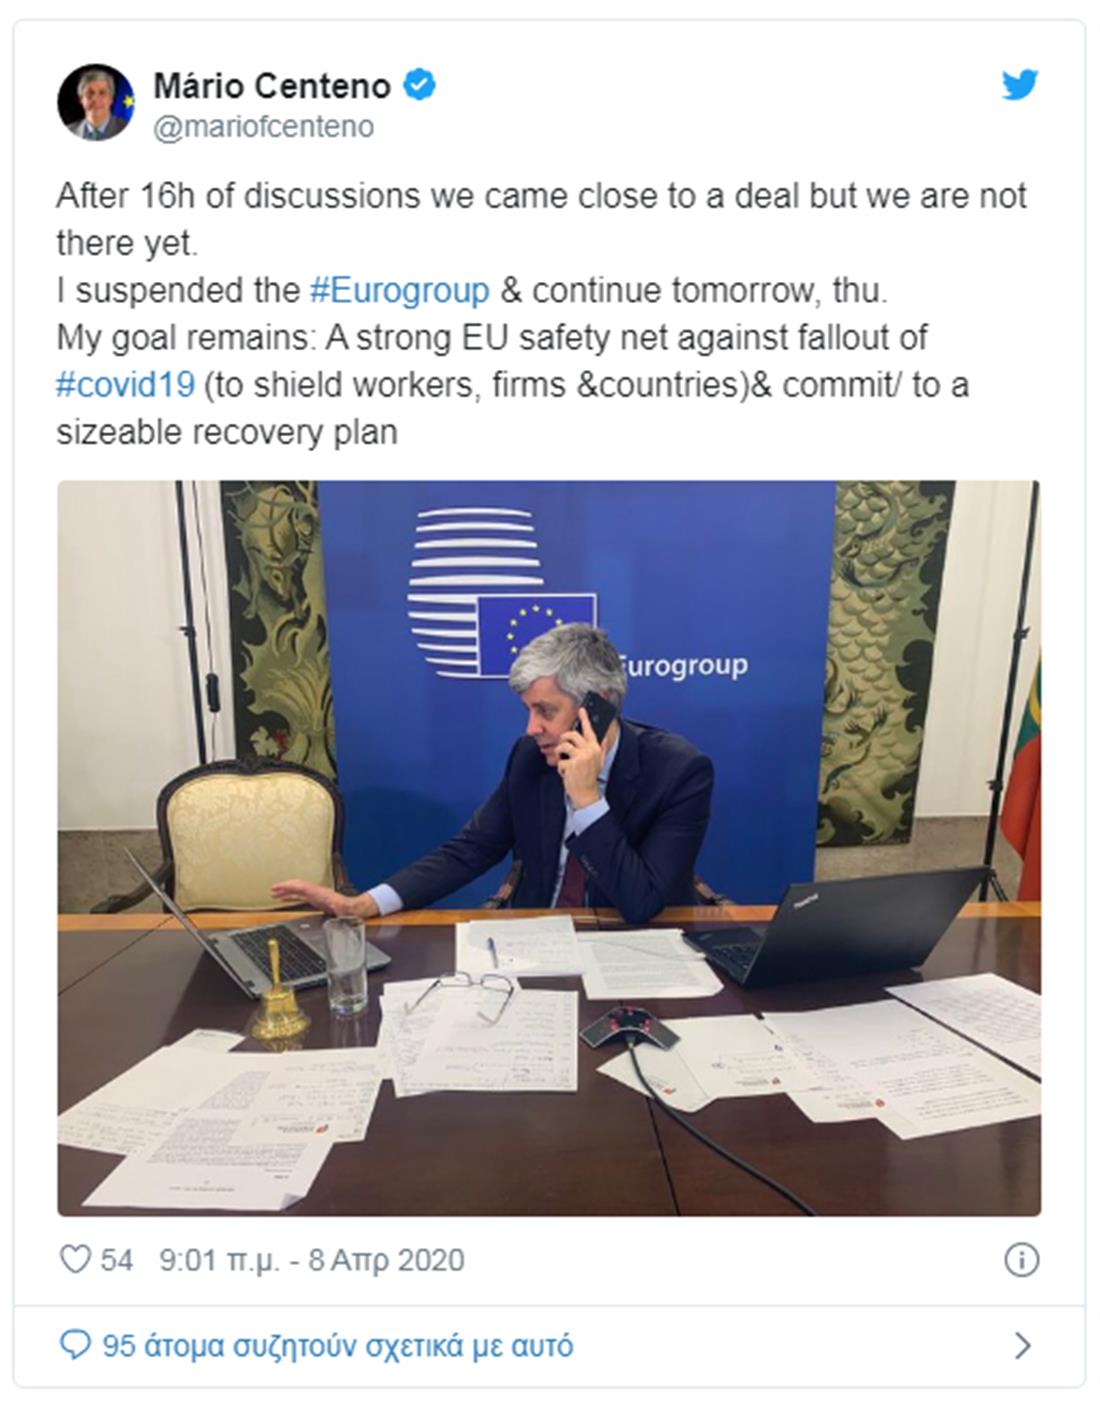 Σεντένο - eurogroup - tweet